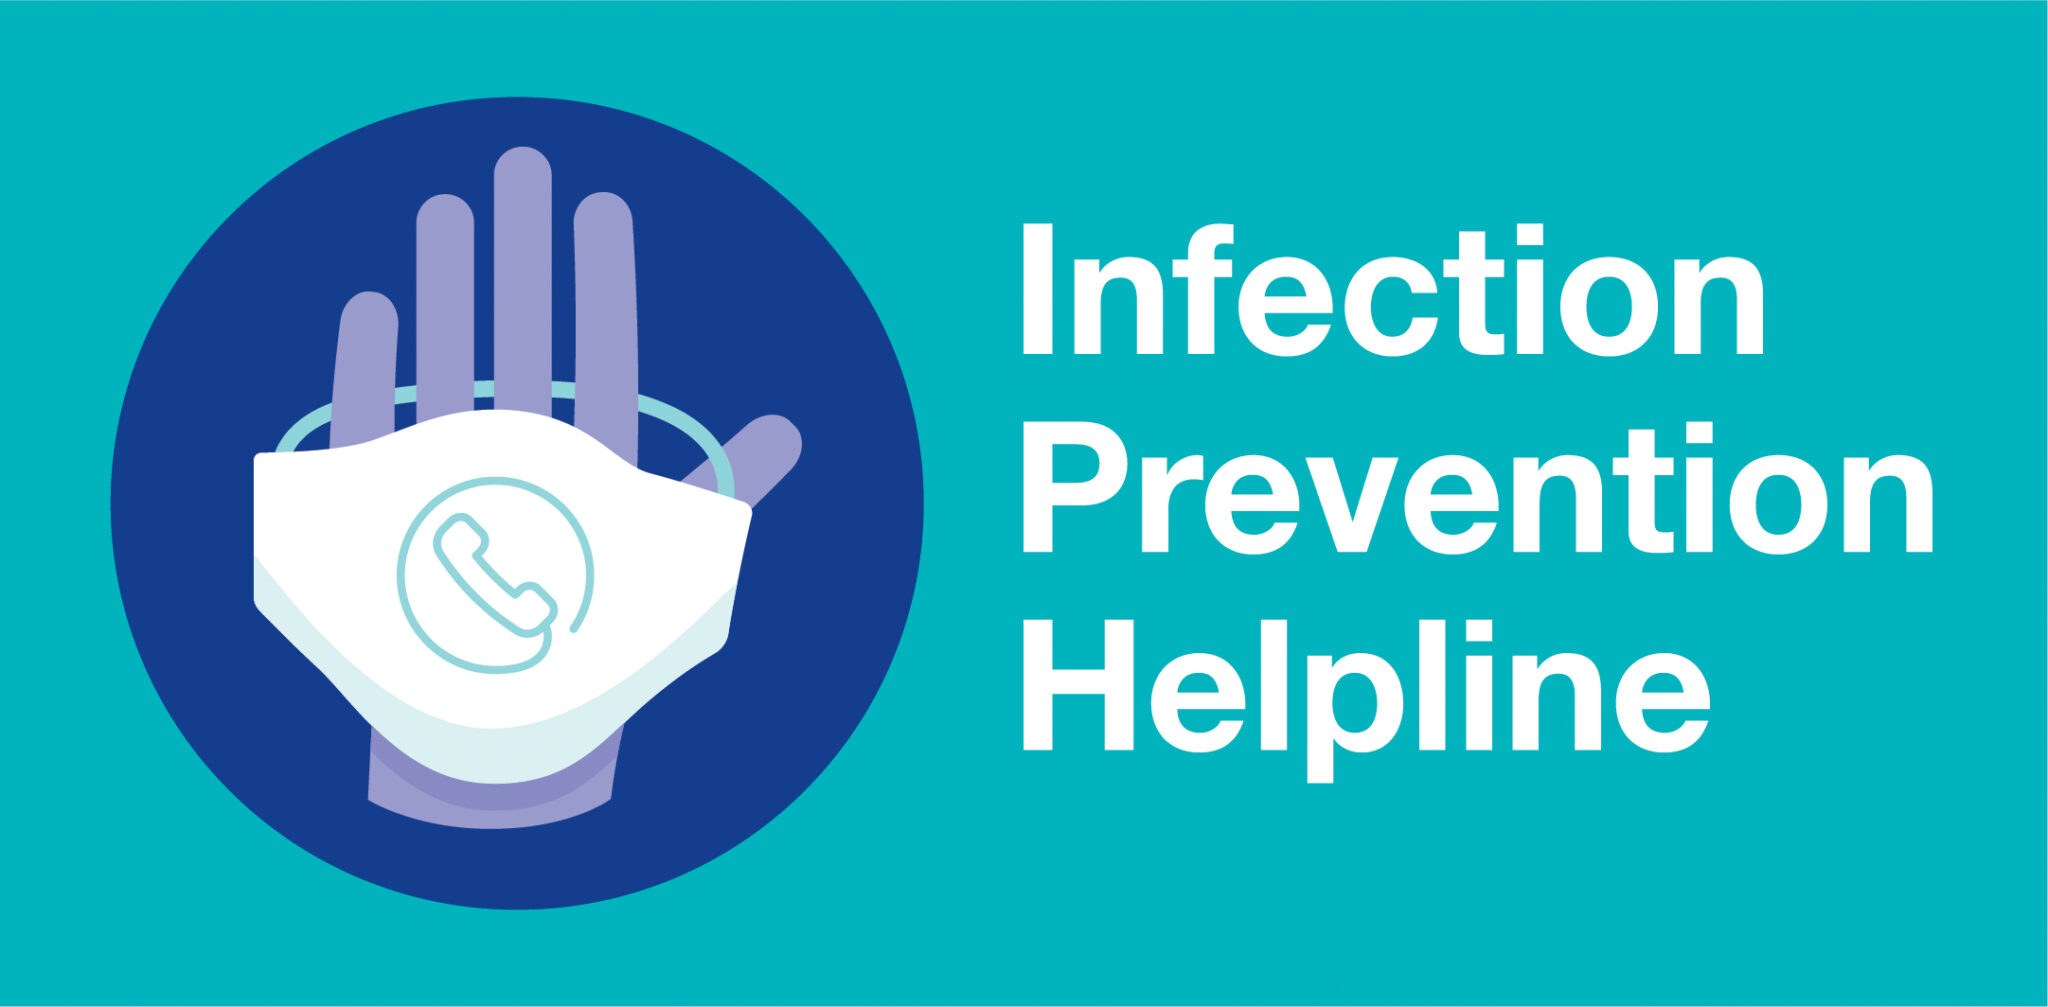 Infection Prevention Helpline update